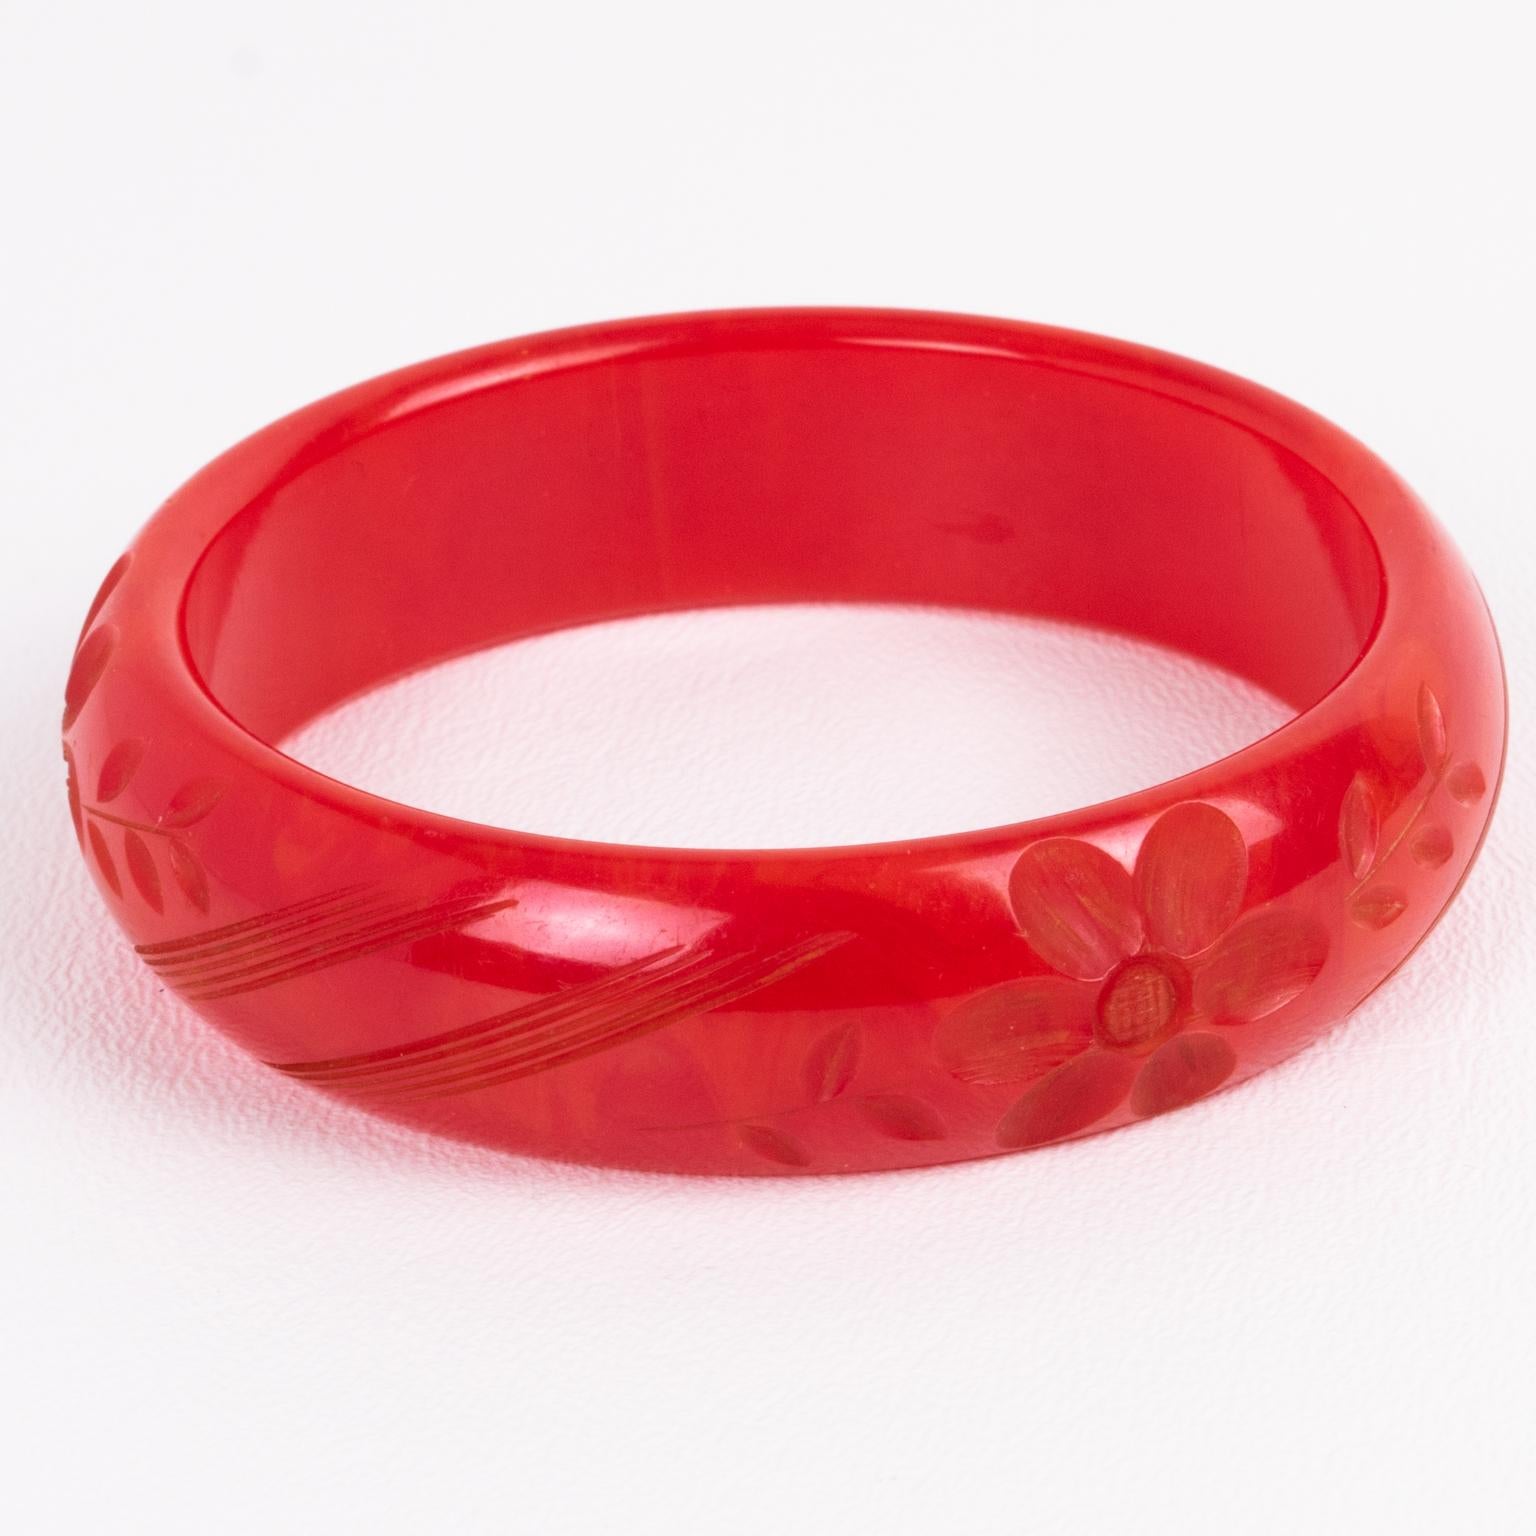 Dies ist eine wunderschöne magenta-roten Marmor Bakelit geschnitzt Armband Armreif. Er hat eine gewölbte Abstandshalterform mit einer tiefen geometrischen und floralen Schnitzerei. Die Farbe ist ein intensives, leuchtendes Rot mit leicht